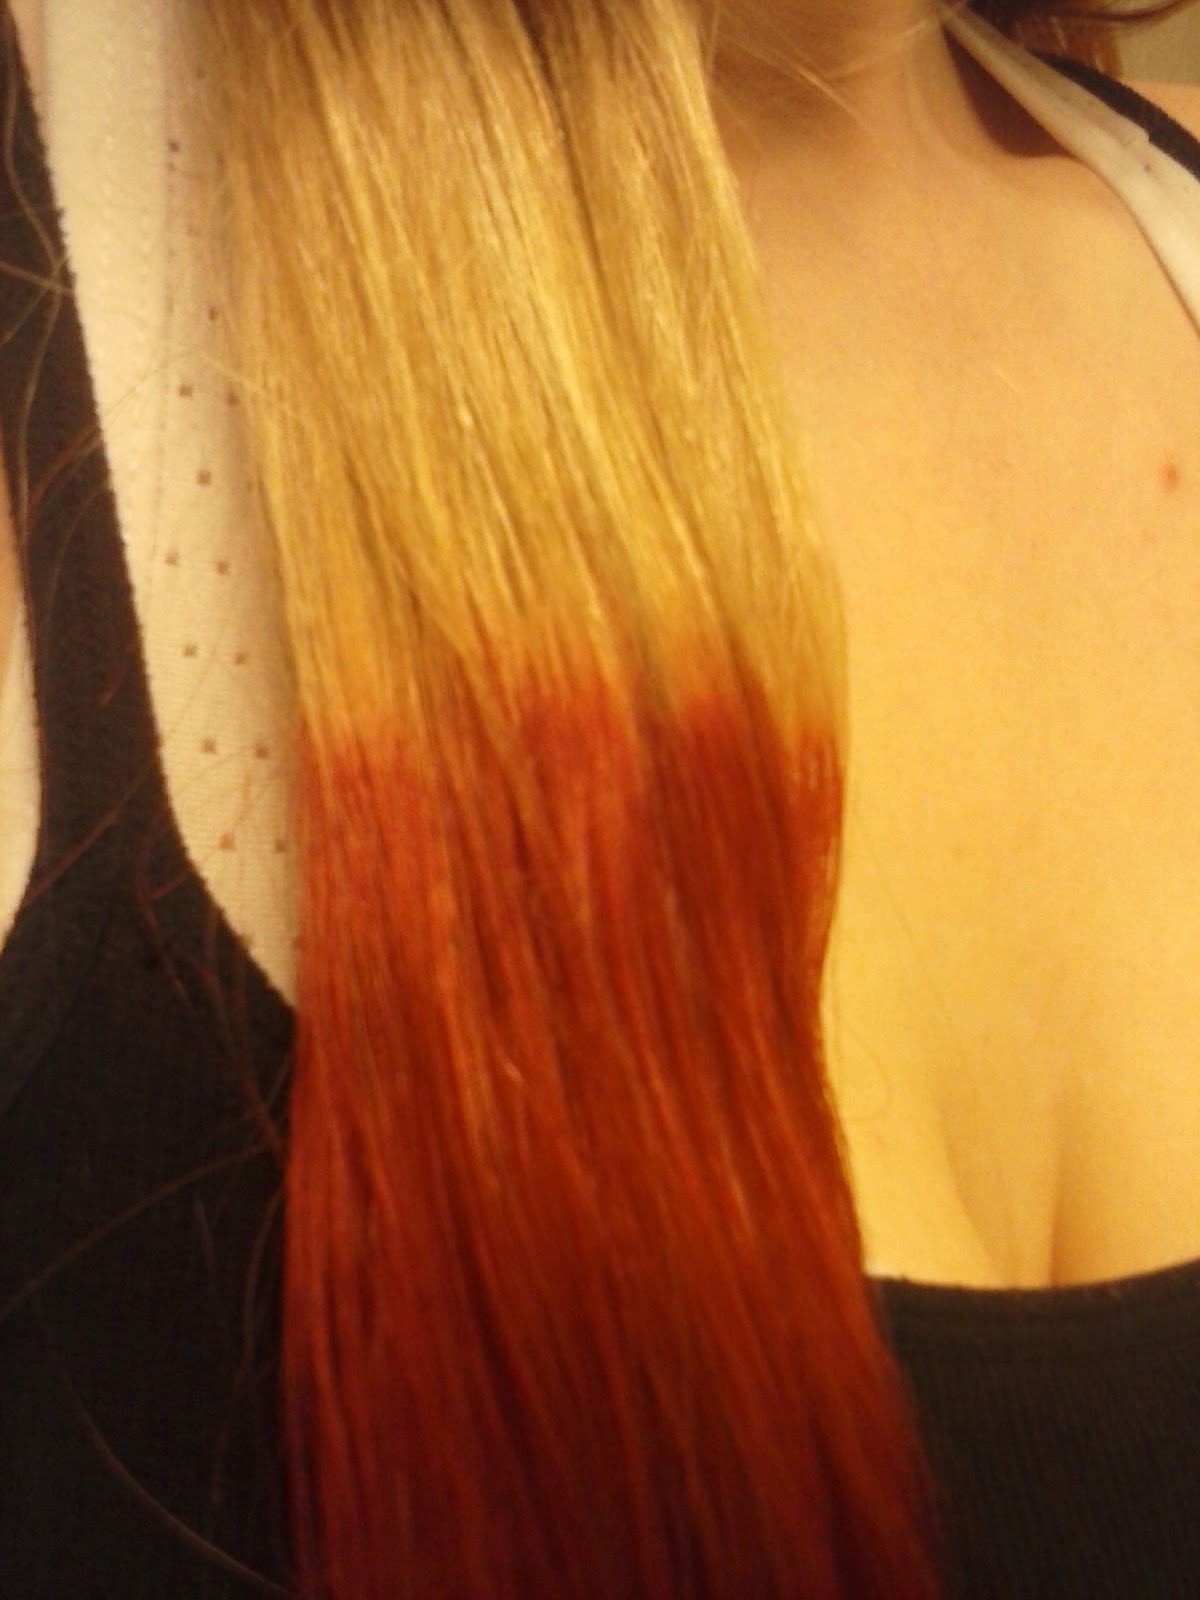 Kool Aid Hair Dye: Color Chart of Red Koolaid Dye in Hair